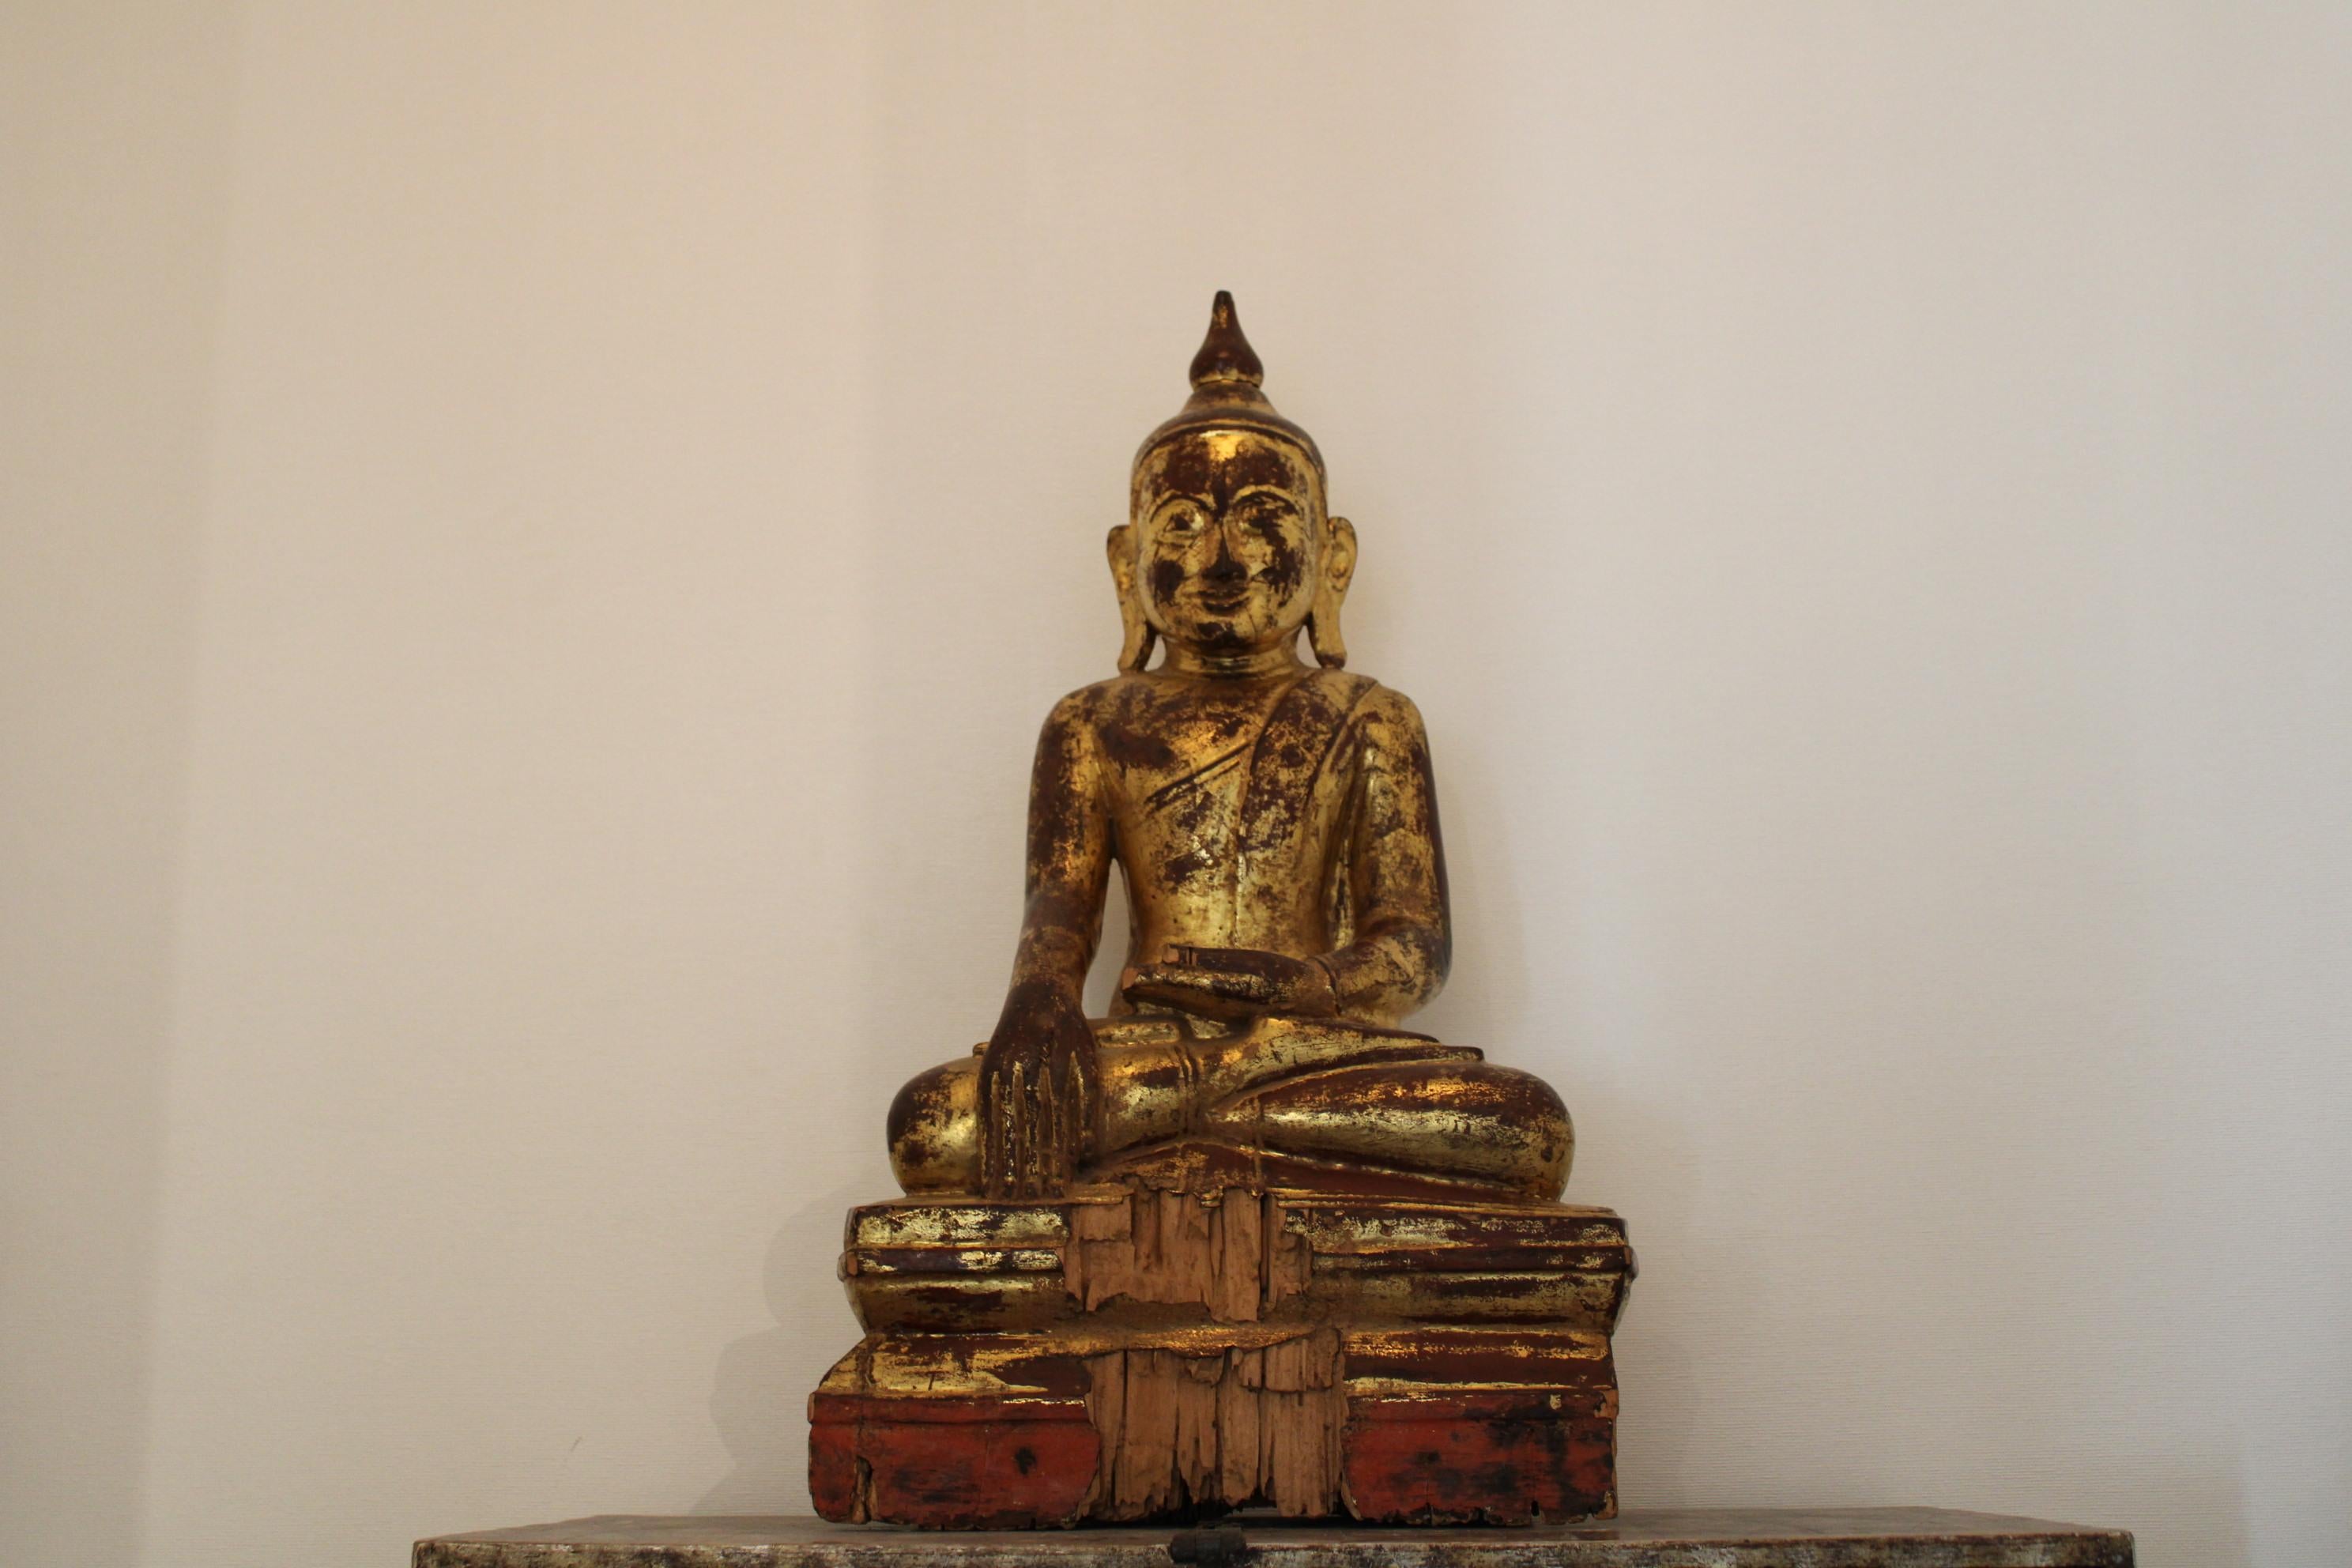 Der burmesische Buddha.
Bemaltes Holz.
19. Jahrhundert.

Großer Mangel an Holz auf der Basis, vorne und hinten.